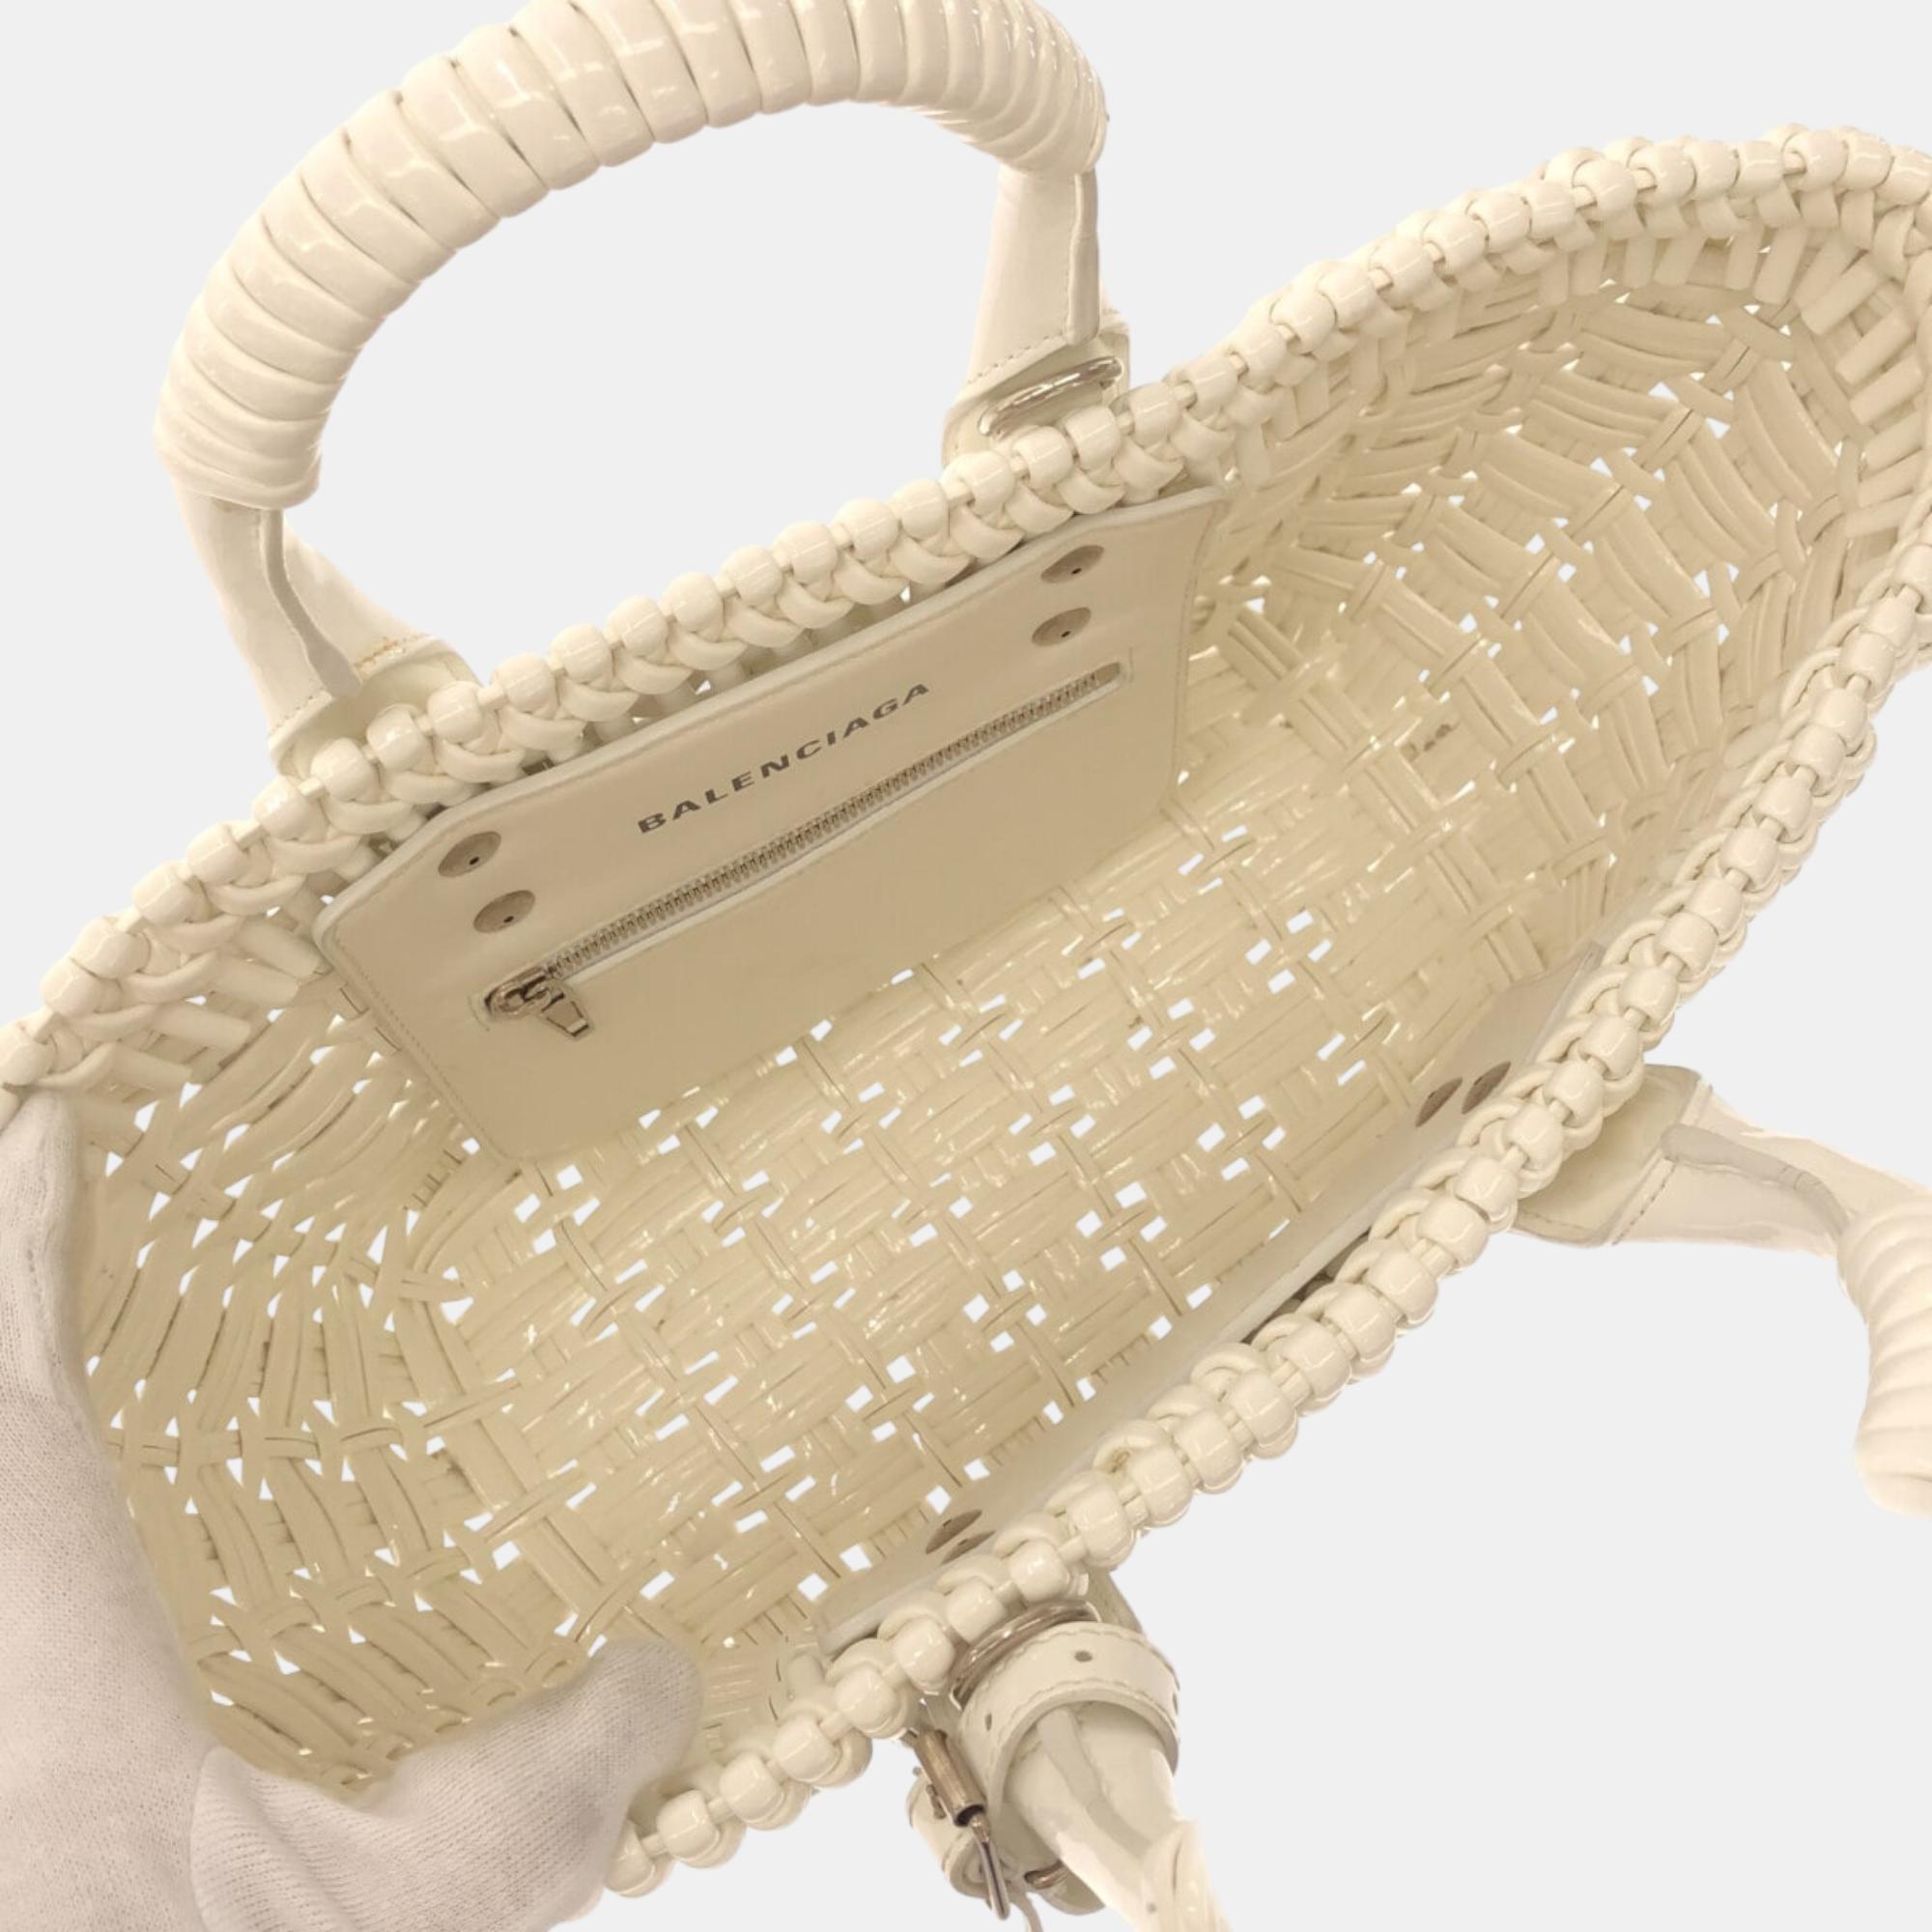 Balenciaga Ecru Synthetic Bistro Basket Tote Bag